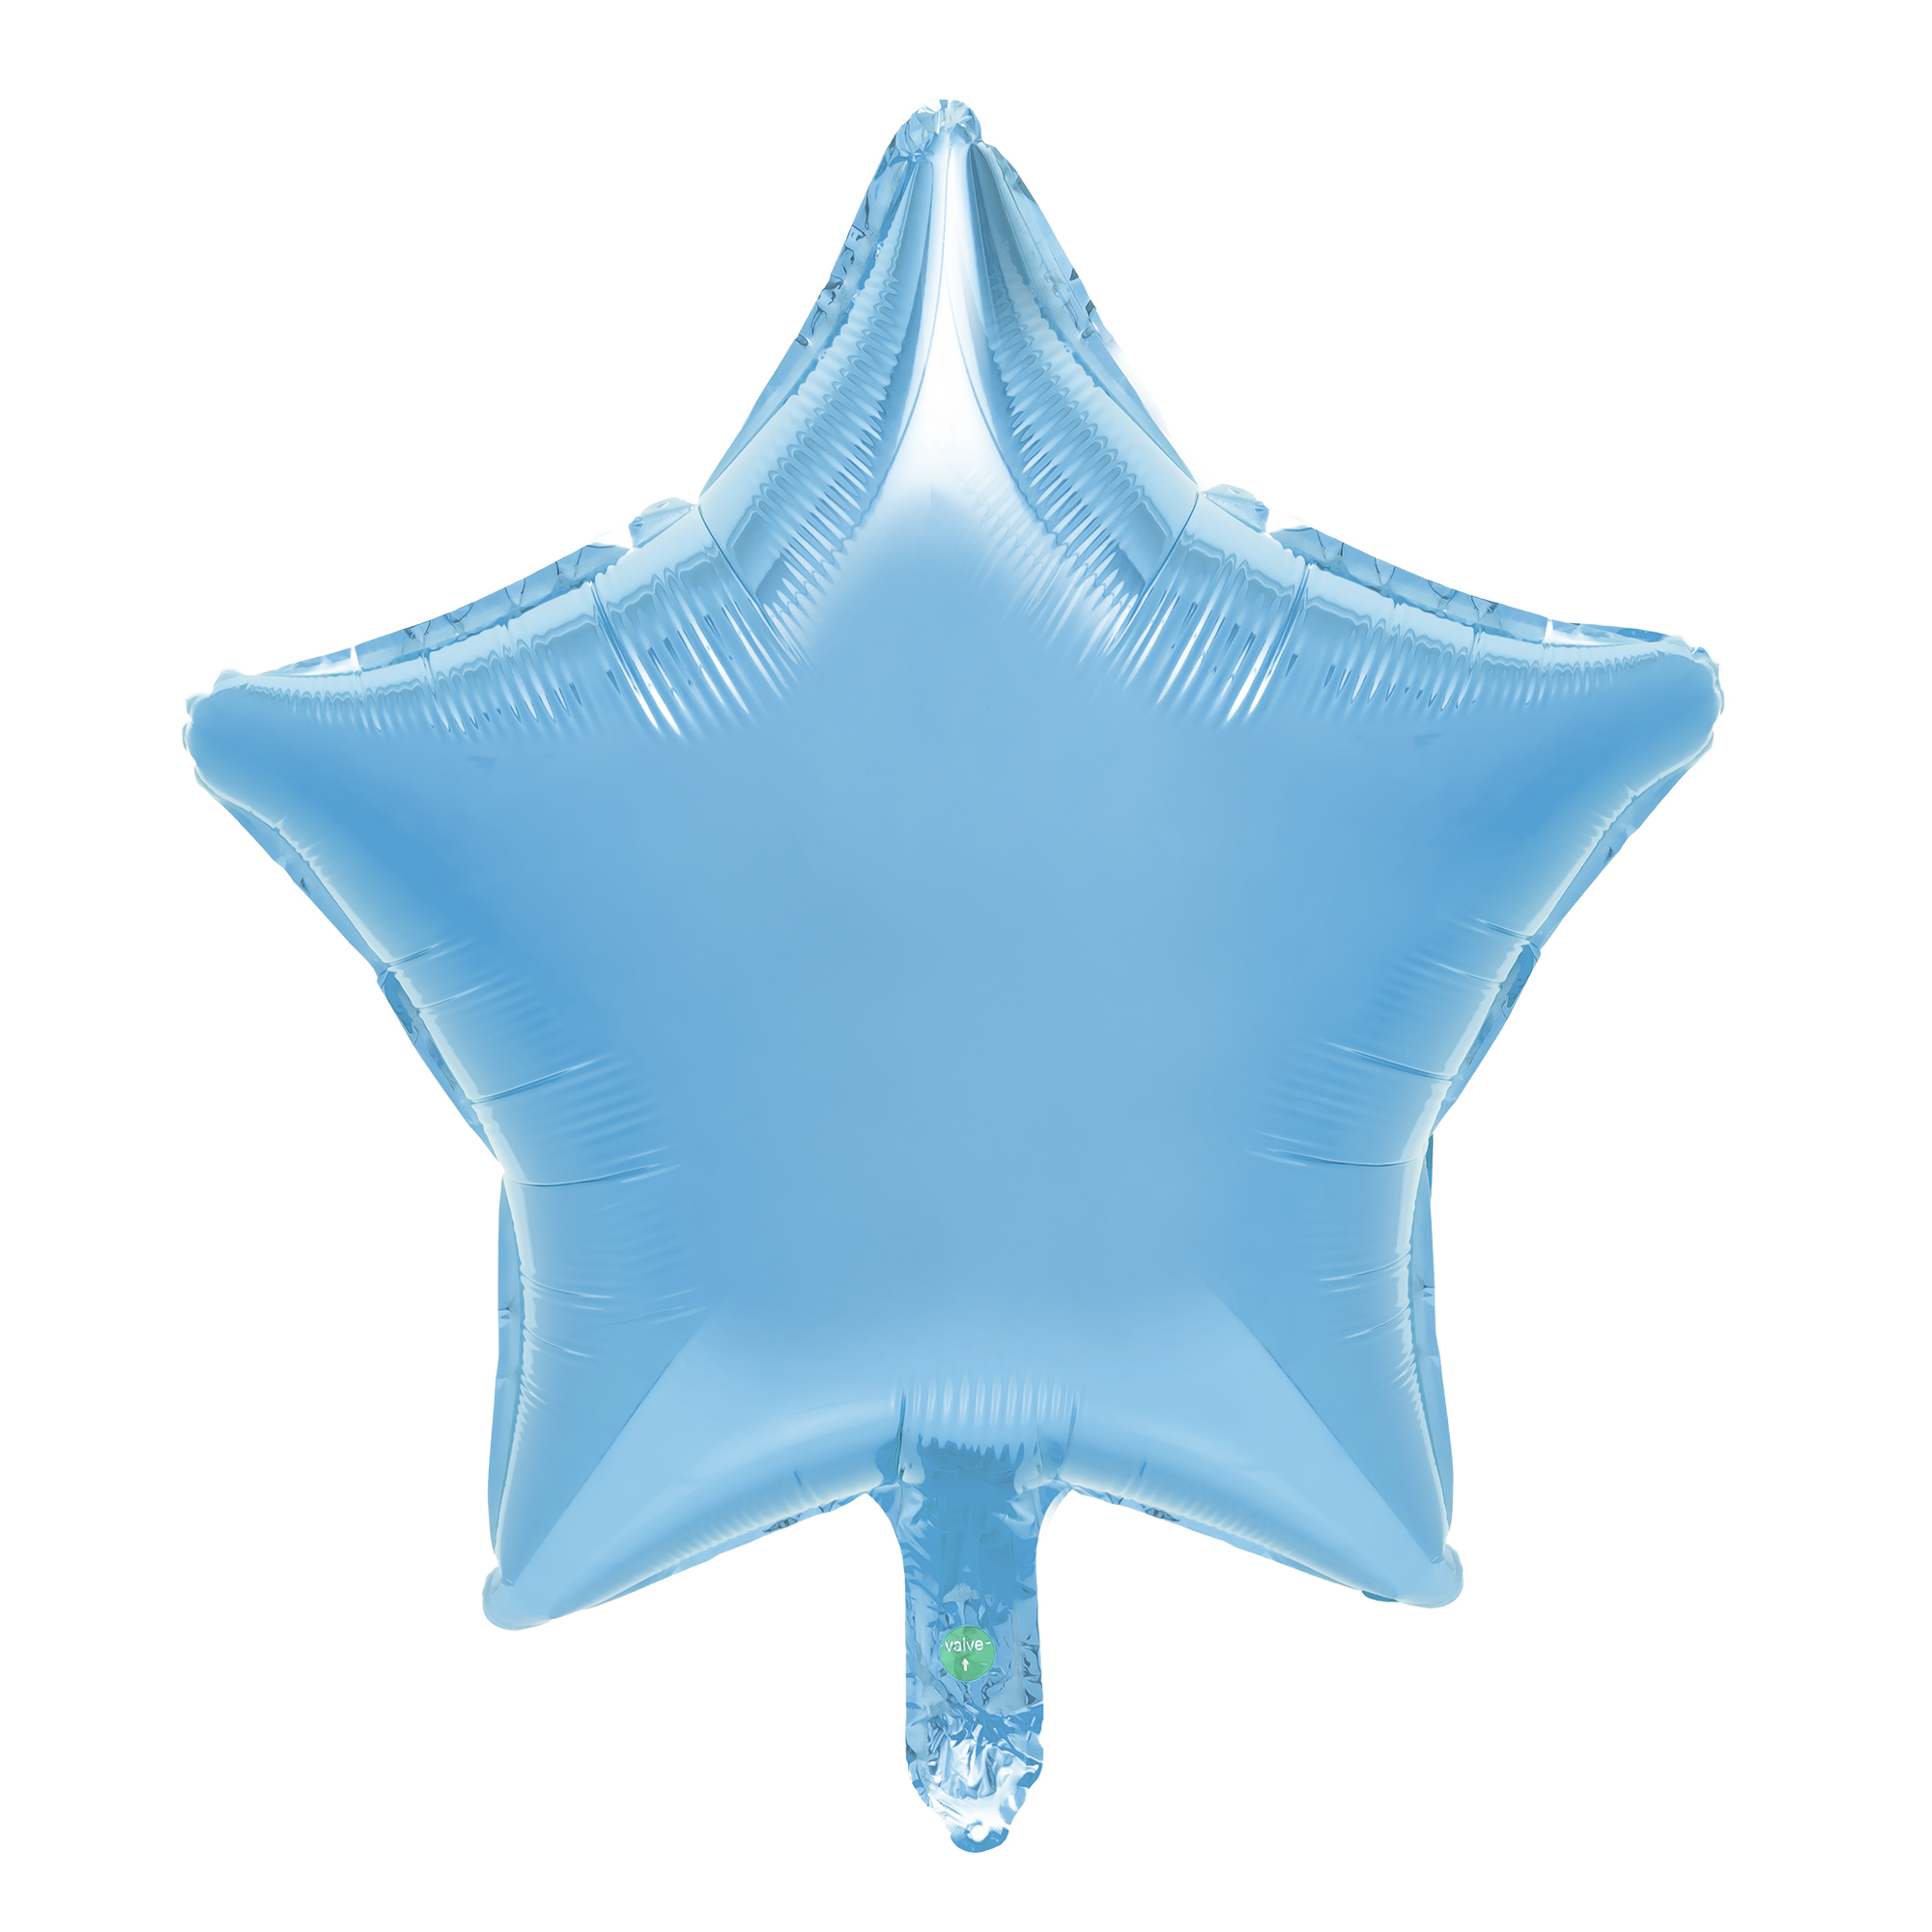 18" Star Mylar Balloon 1pc/bag - Blue